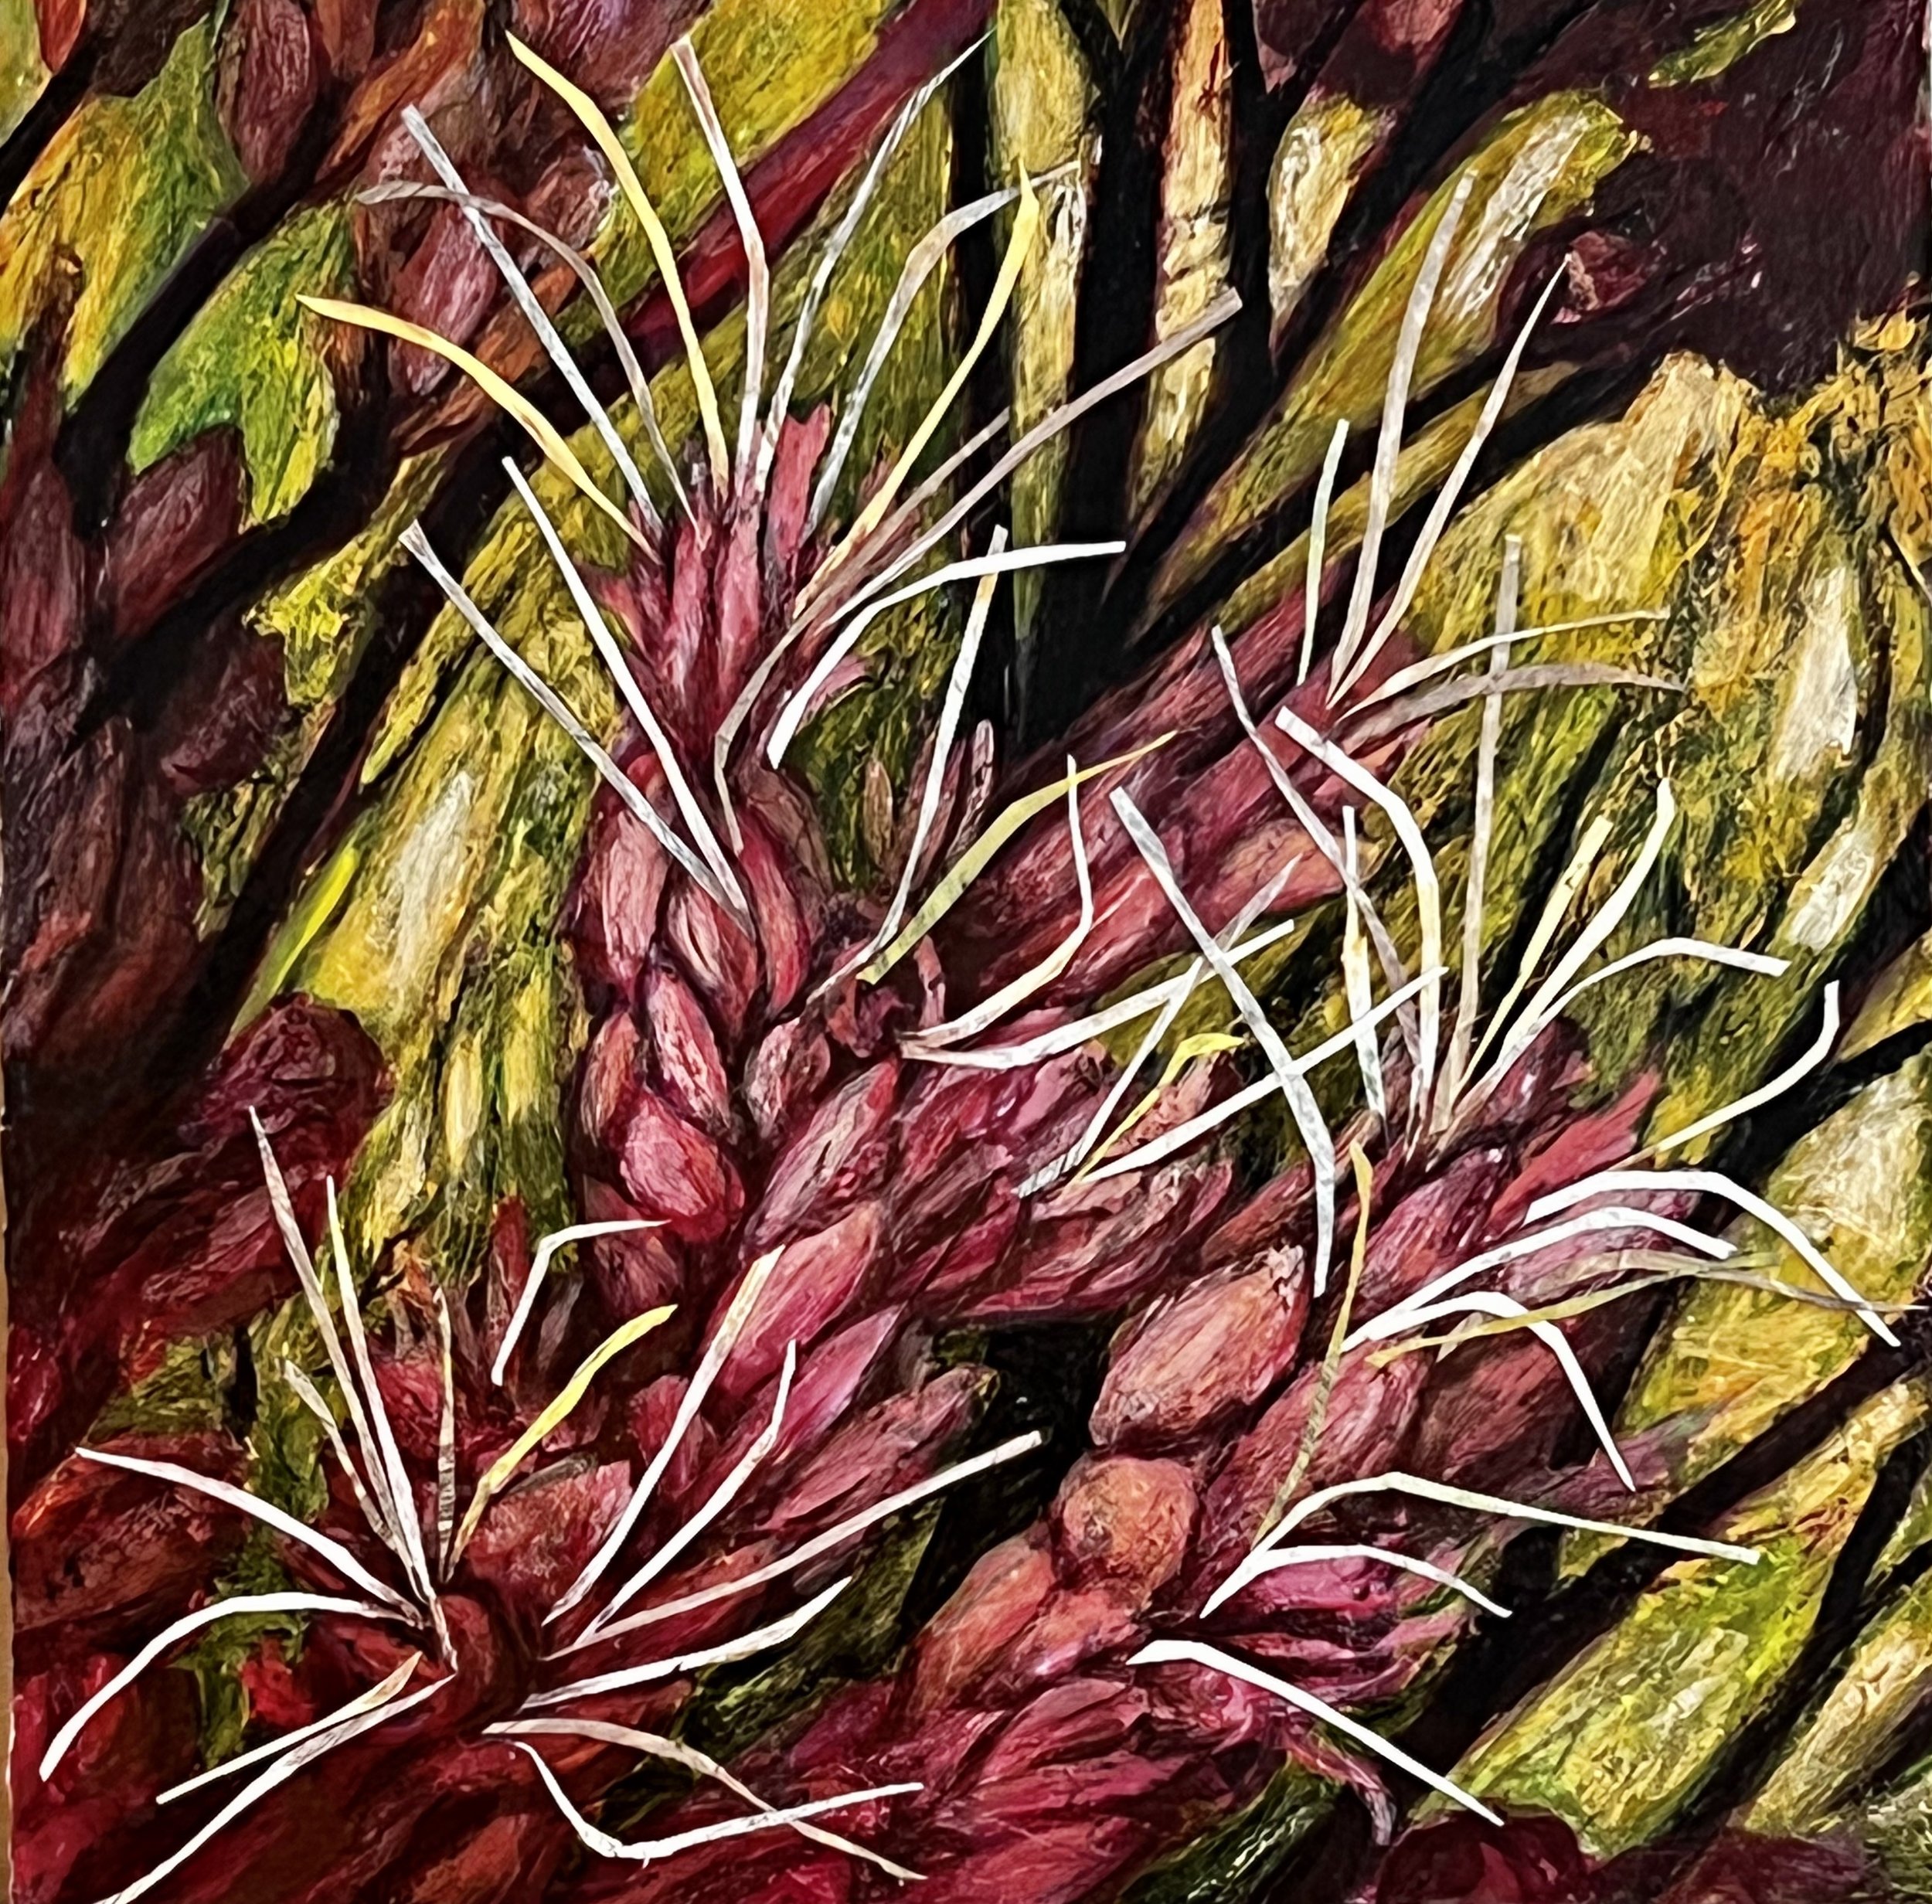 Purple Joe-Pye Weed (Eutrochium purpureum), 2022, acrylic and collage on wood panel, 12x12”, $700